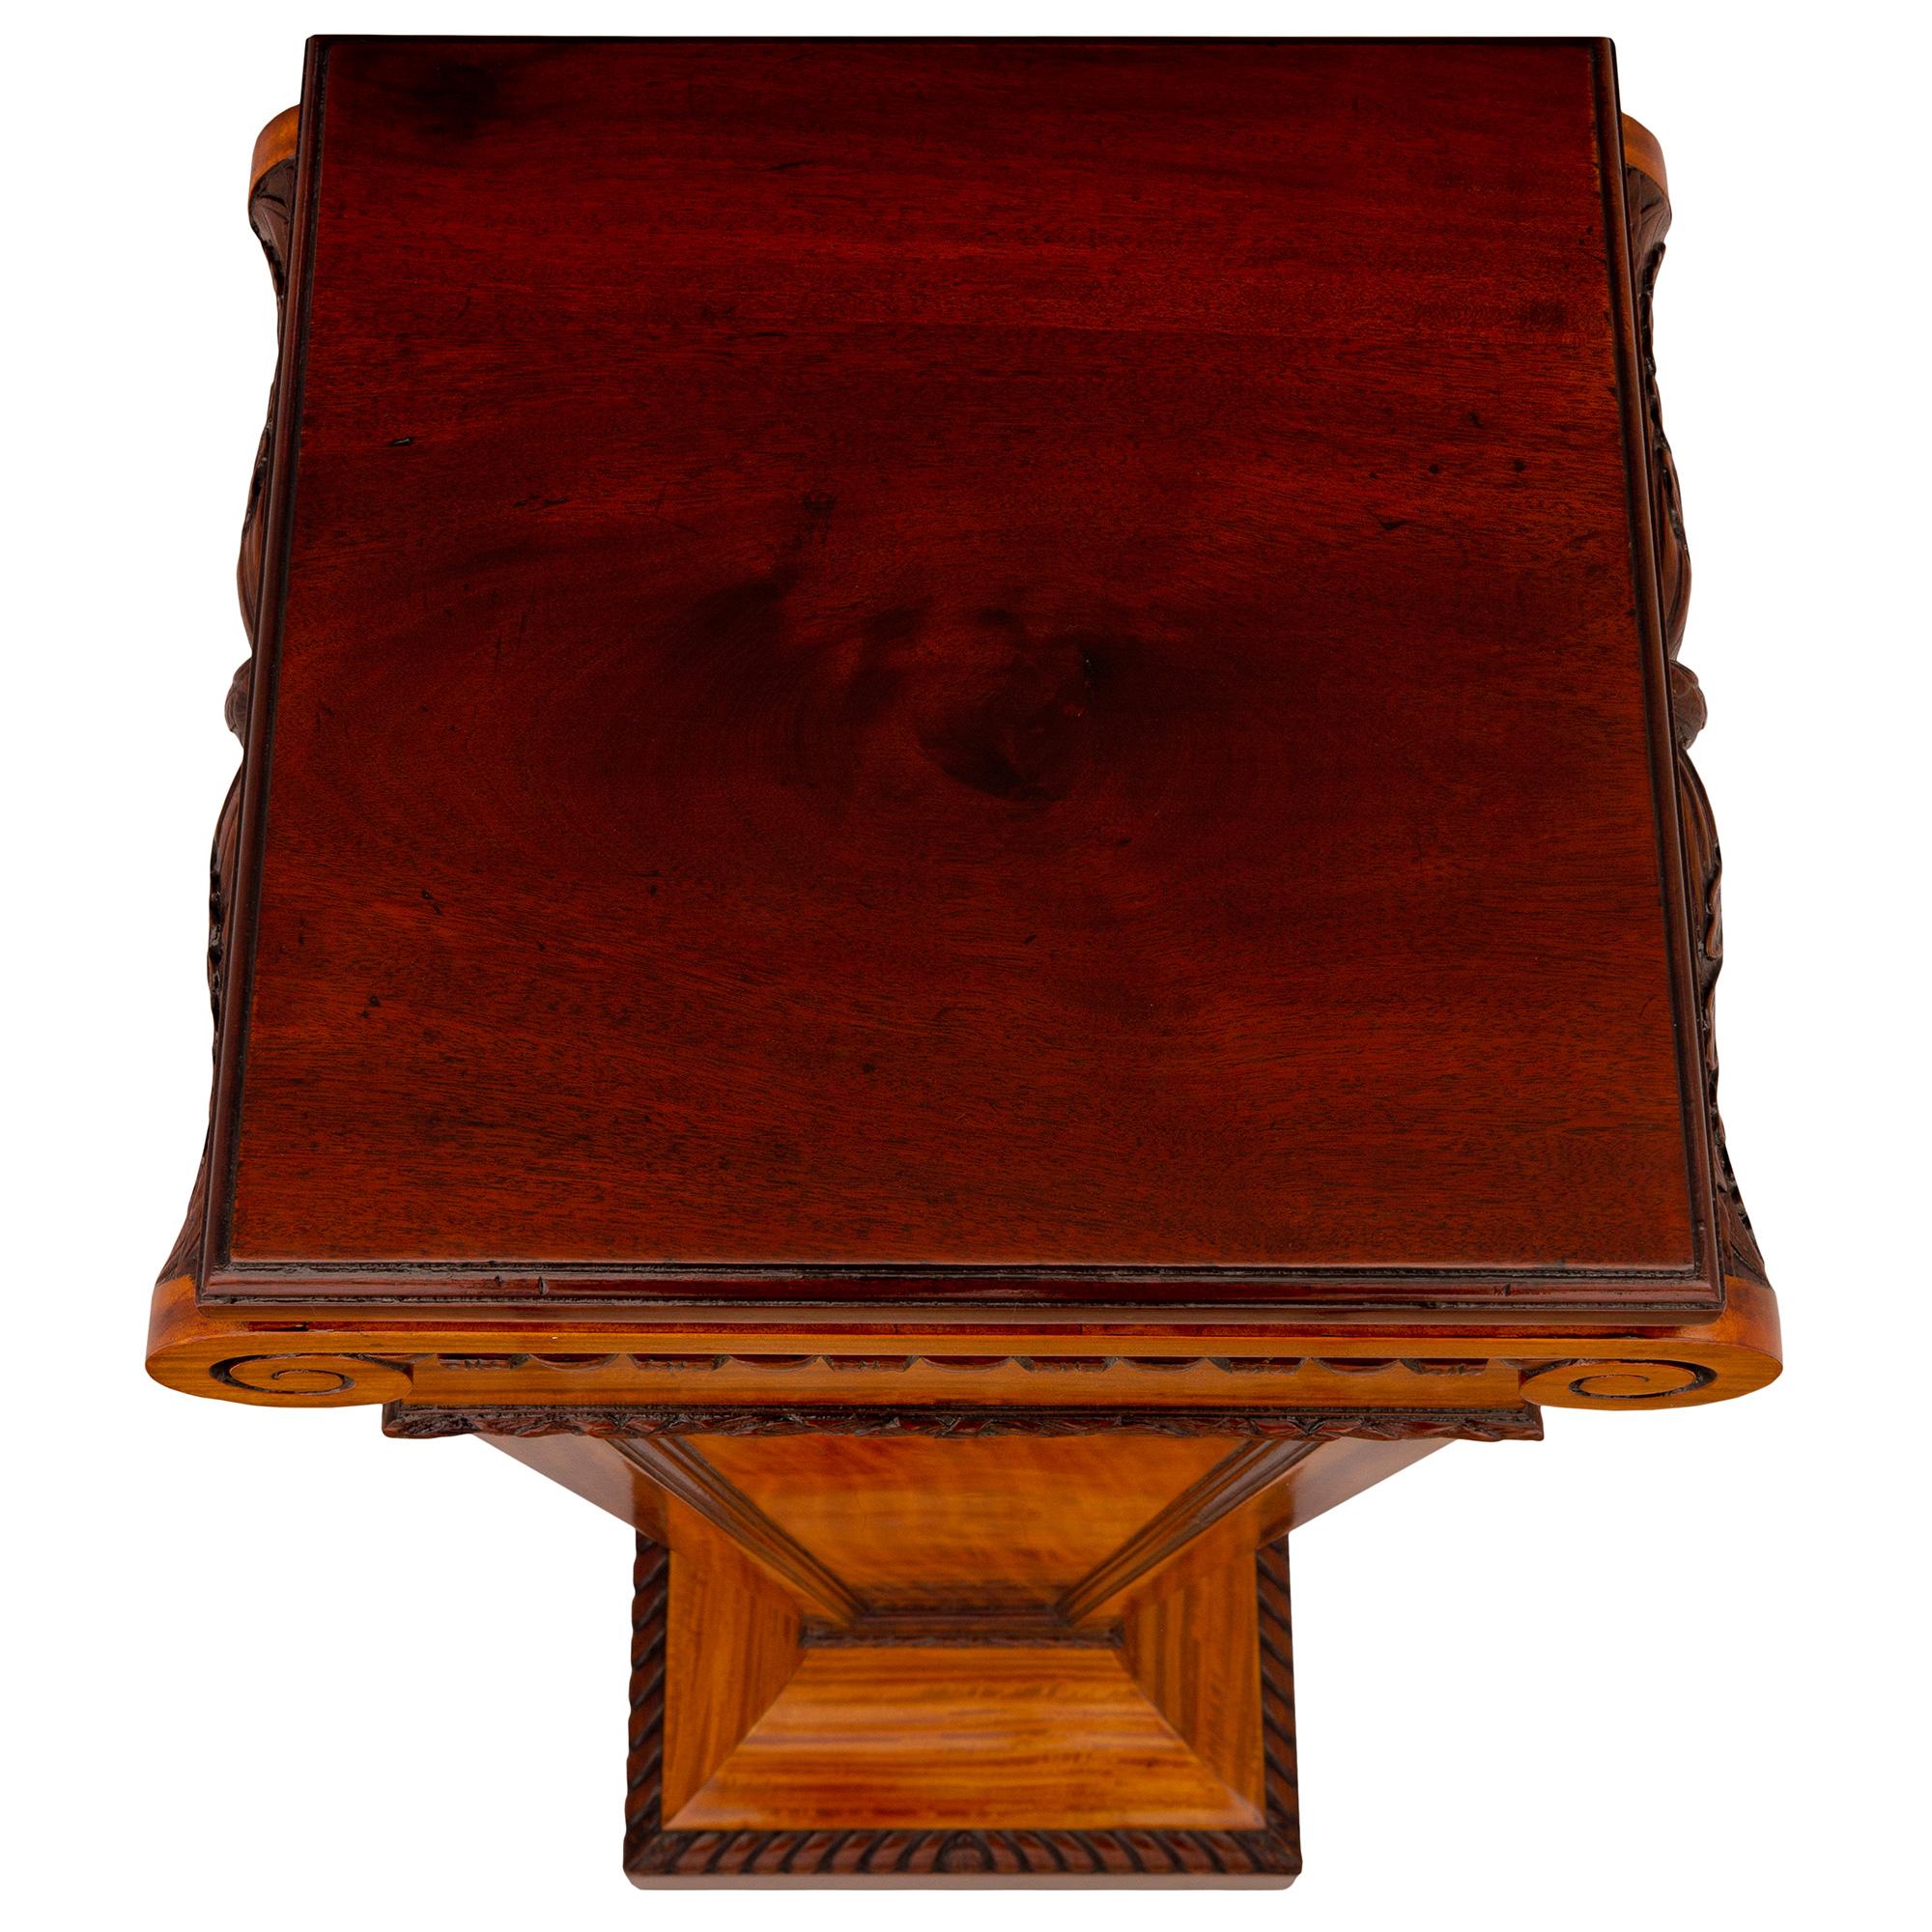 Eine elegante englische Regency-Säule aus dem 19. Jahrhundert aus Satinholz. Der Sockel wird von einem quadratischen Sockel mit einem fein geschnitzten, umlaufenden Gadroon-Muster getragen. Über dem leicht geschwungenen, sockelförmigen Sockel